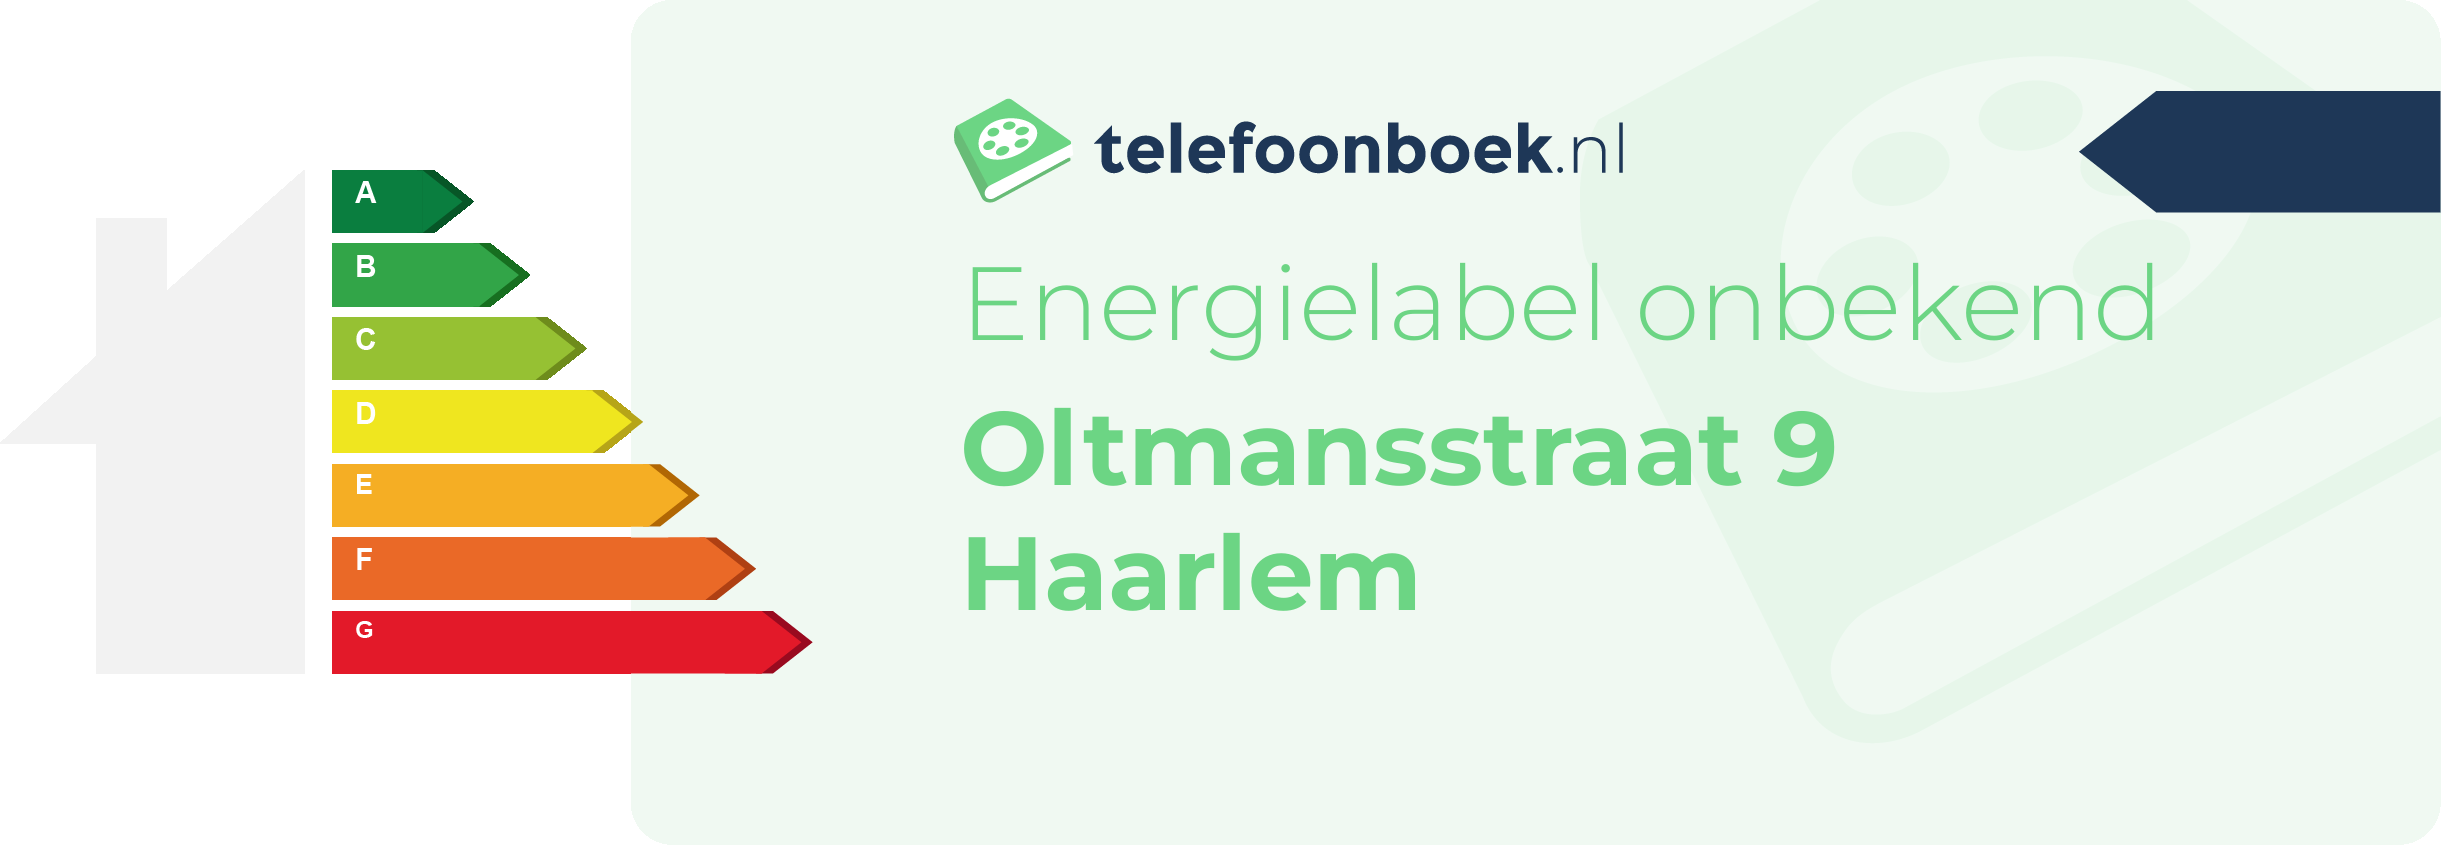 Energielabel Oltmansstraat 9 Haarlem